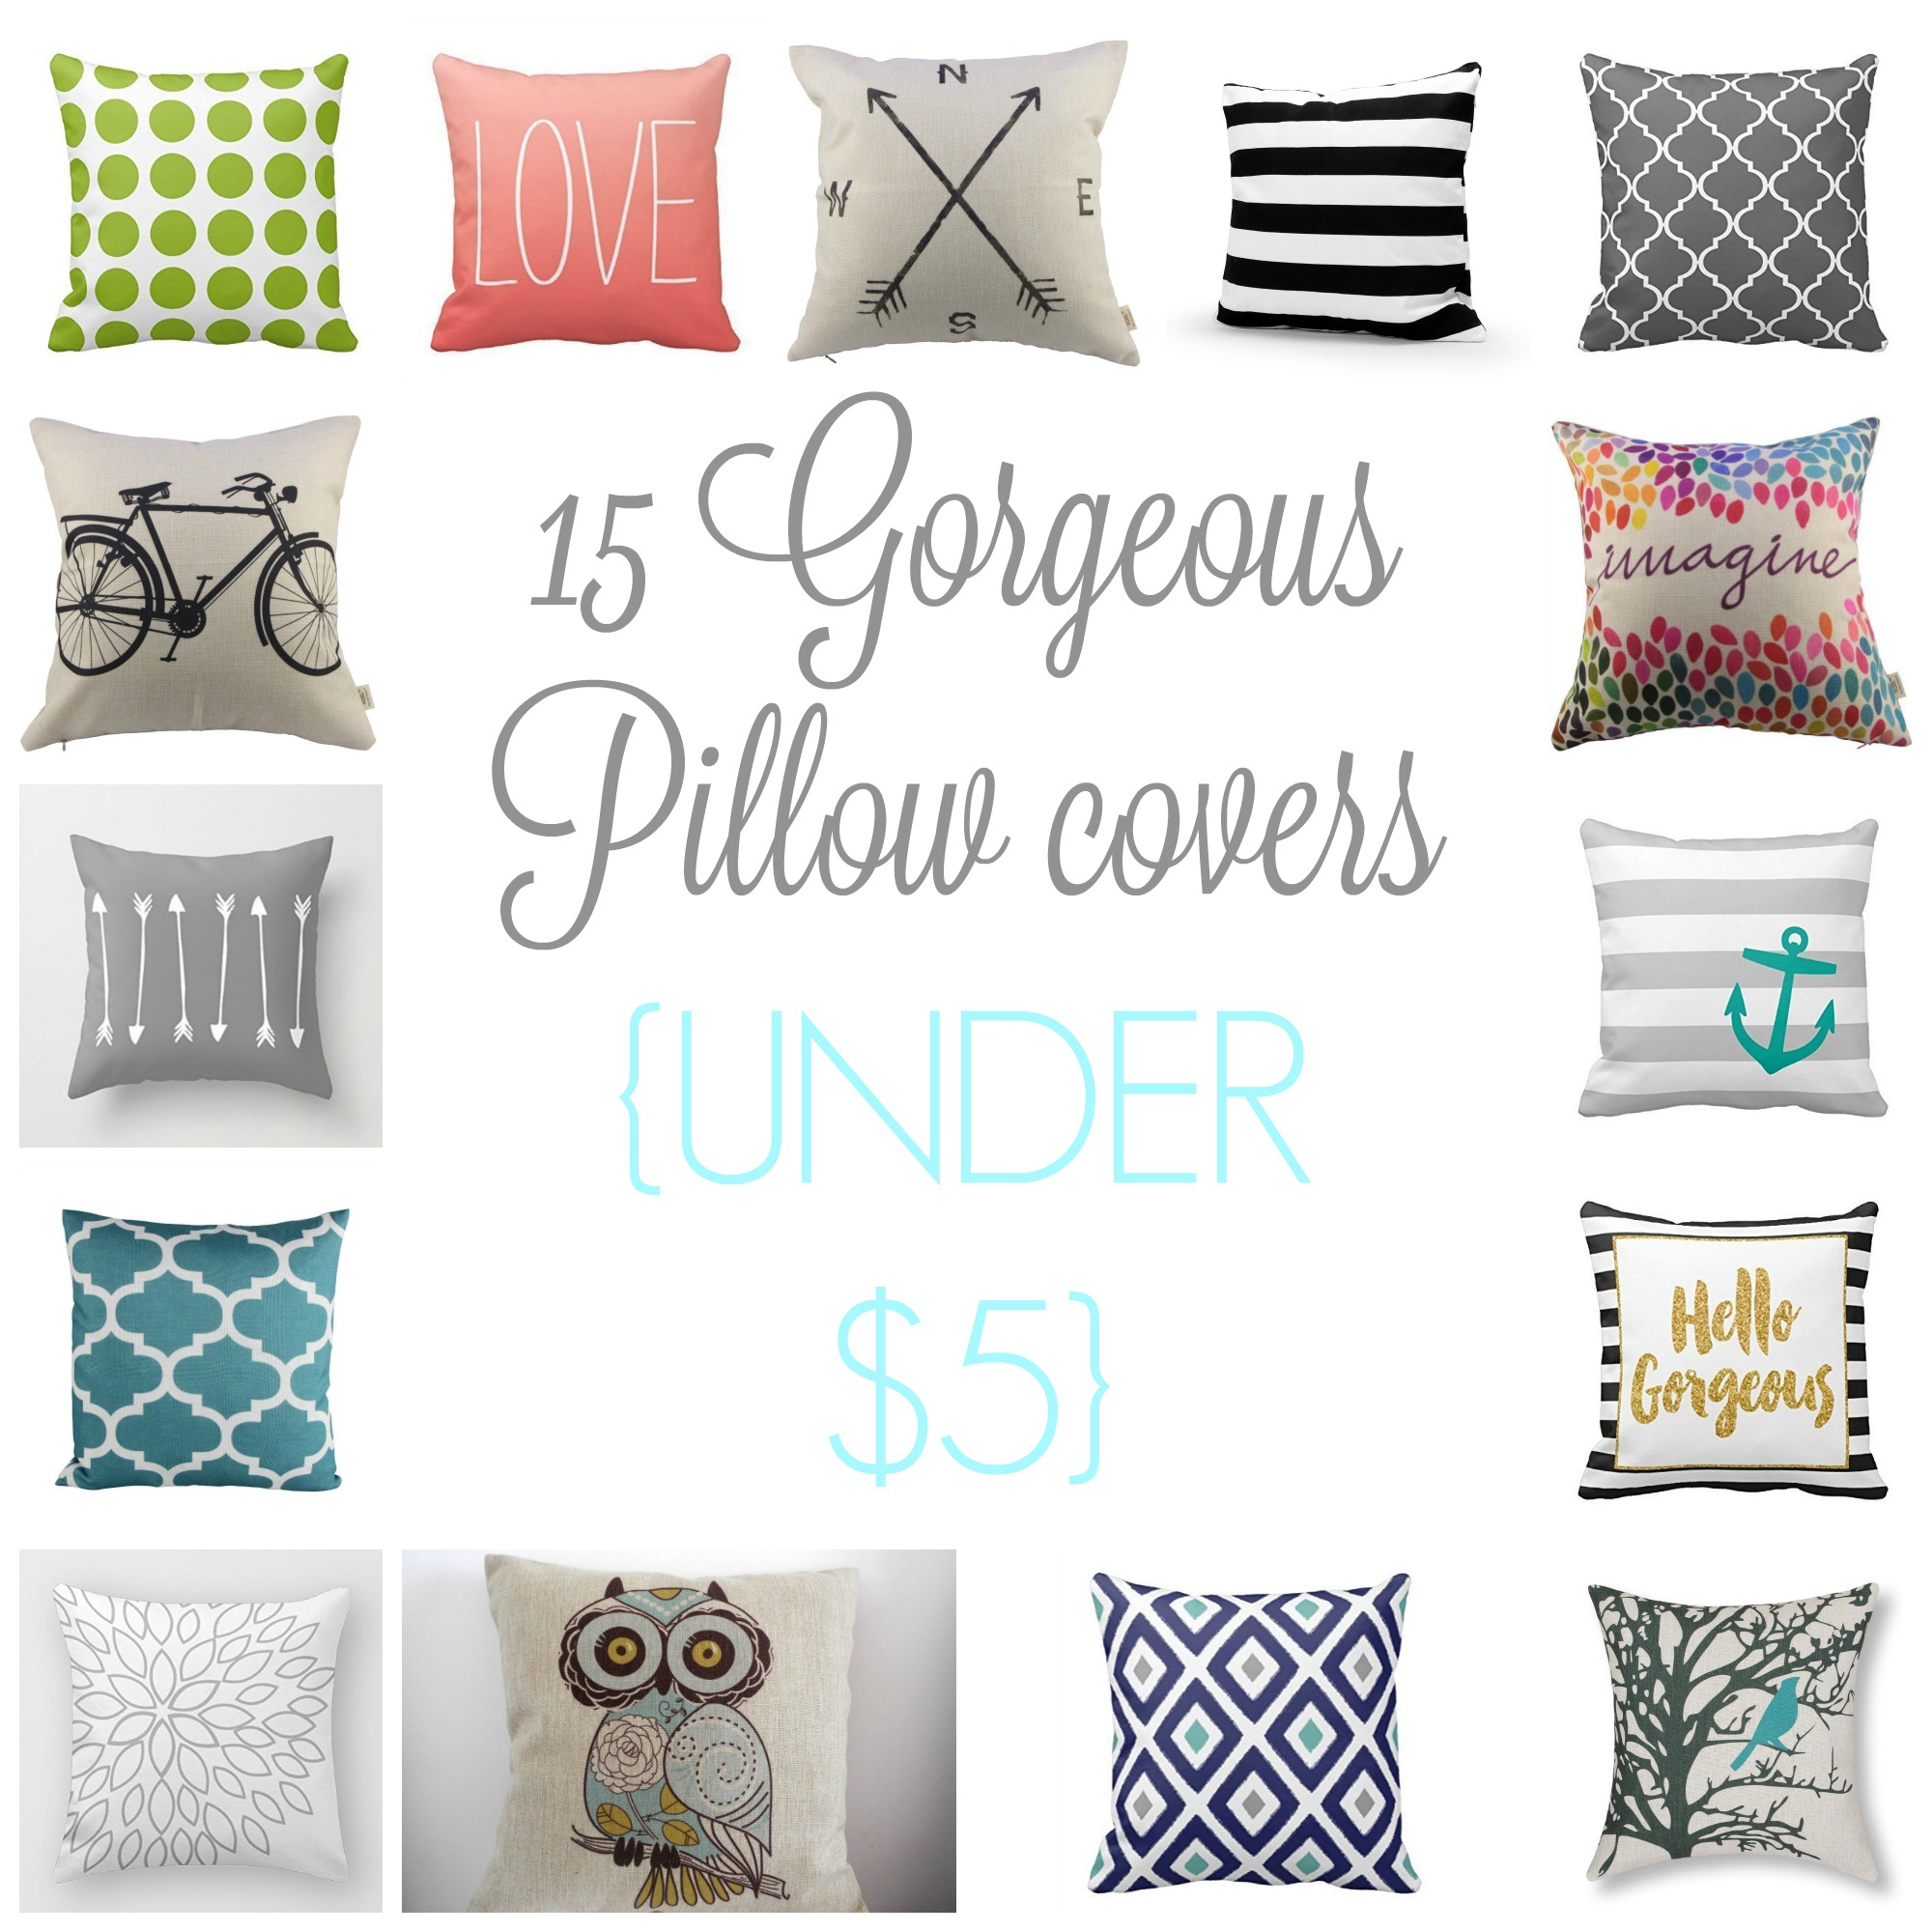 cheap decorative pillows under $5